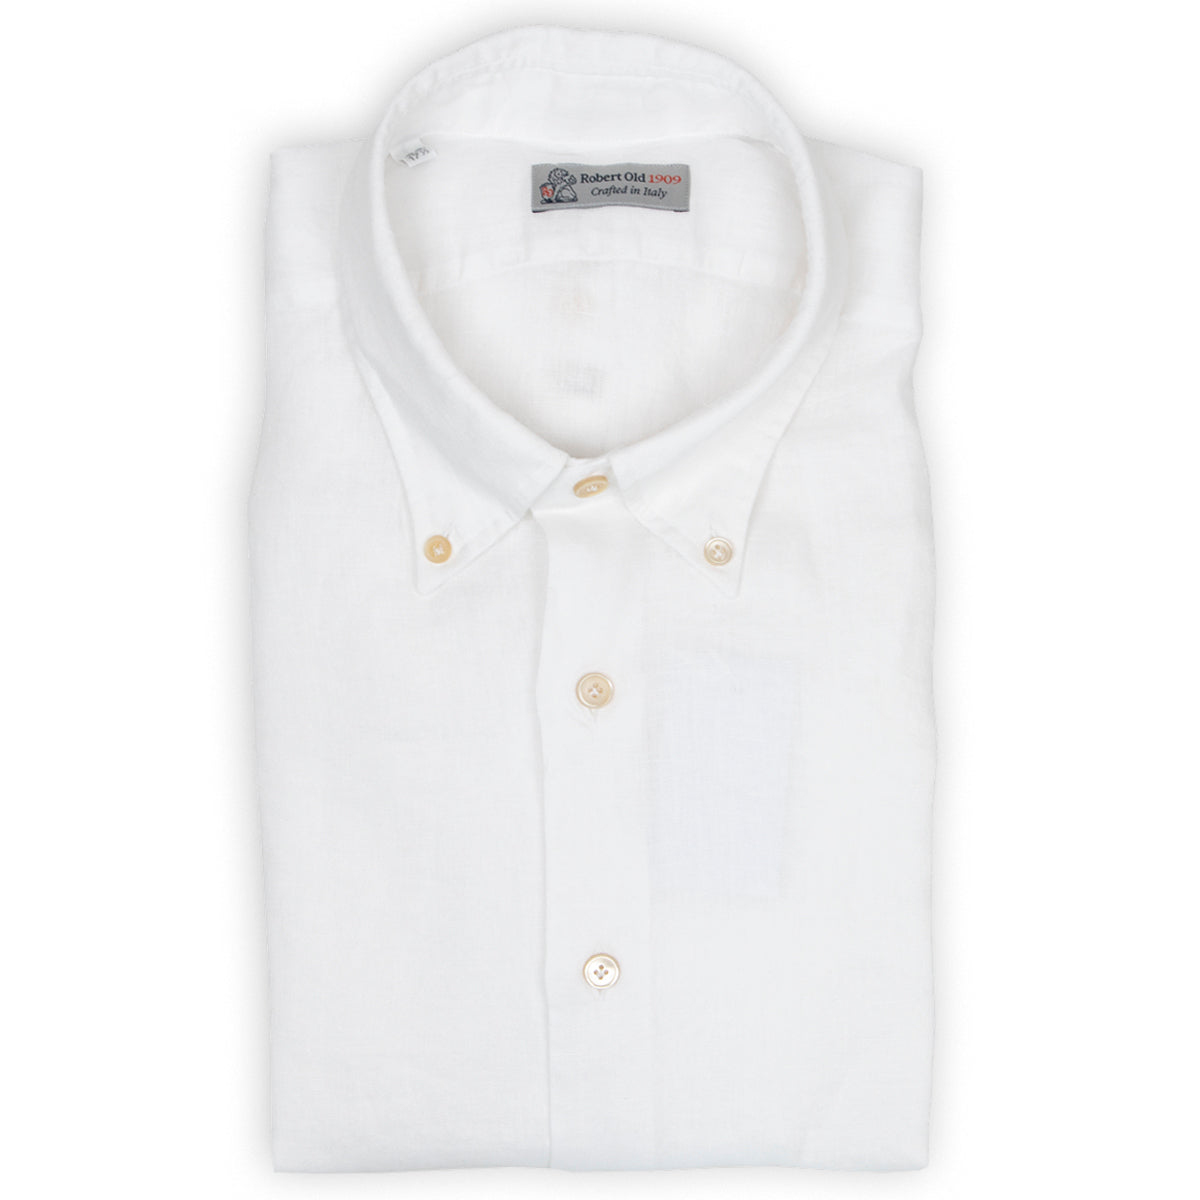 White Linen Button-Down Long Sleeve Shirt  Robert Old   